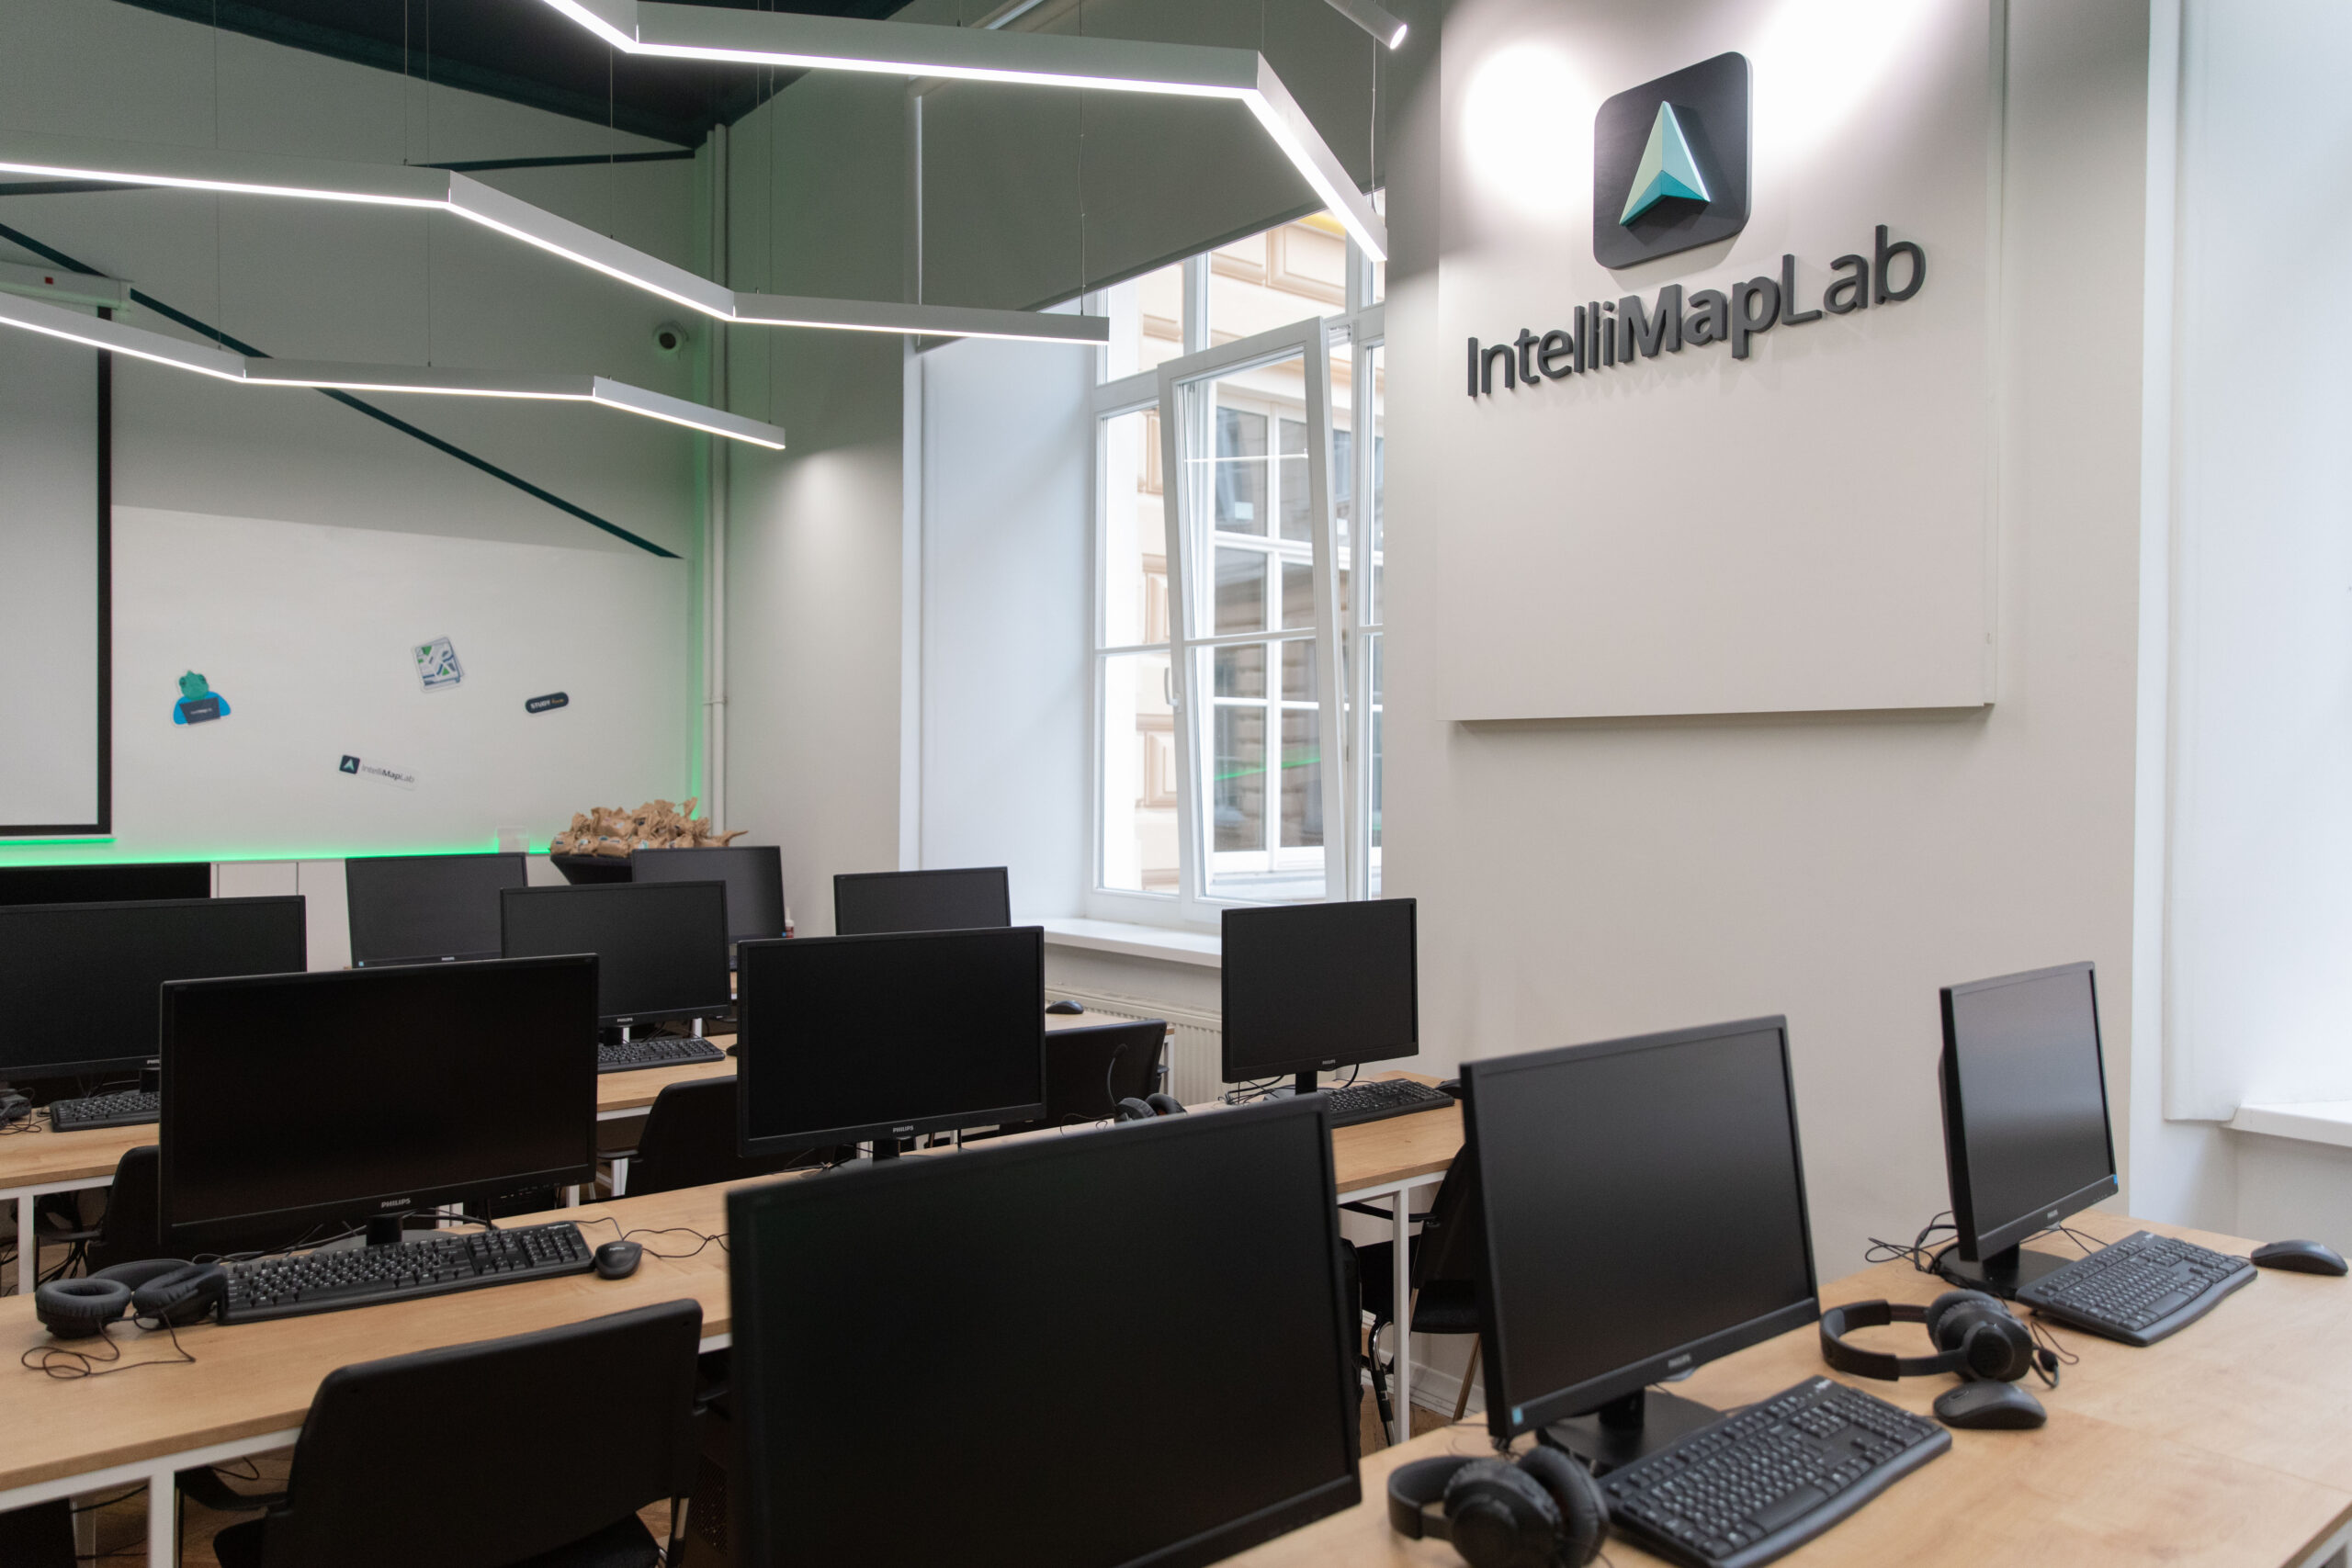 У Львівському університеті за ініціативи компанії Intellias відкрили інноваційну лабораторію IntelliMapLab